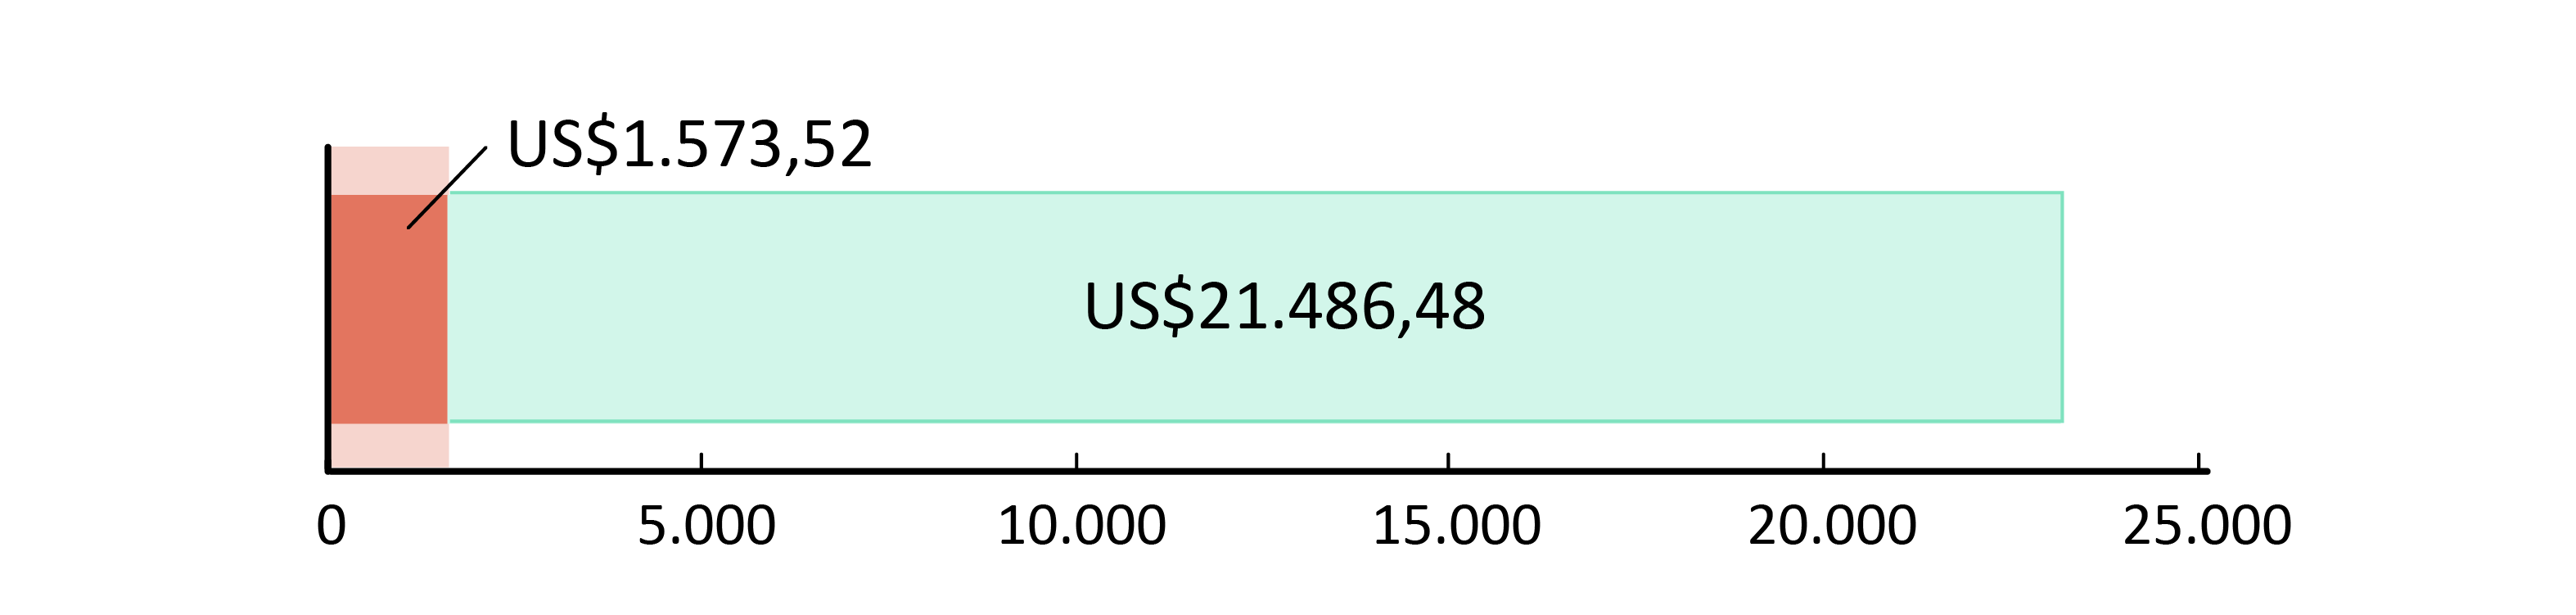 US$ 1.573,52 gastos; US$21.486,48 em caixa